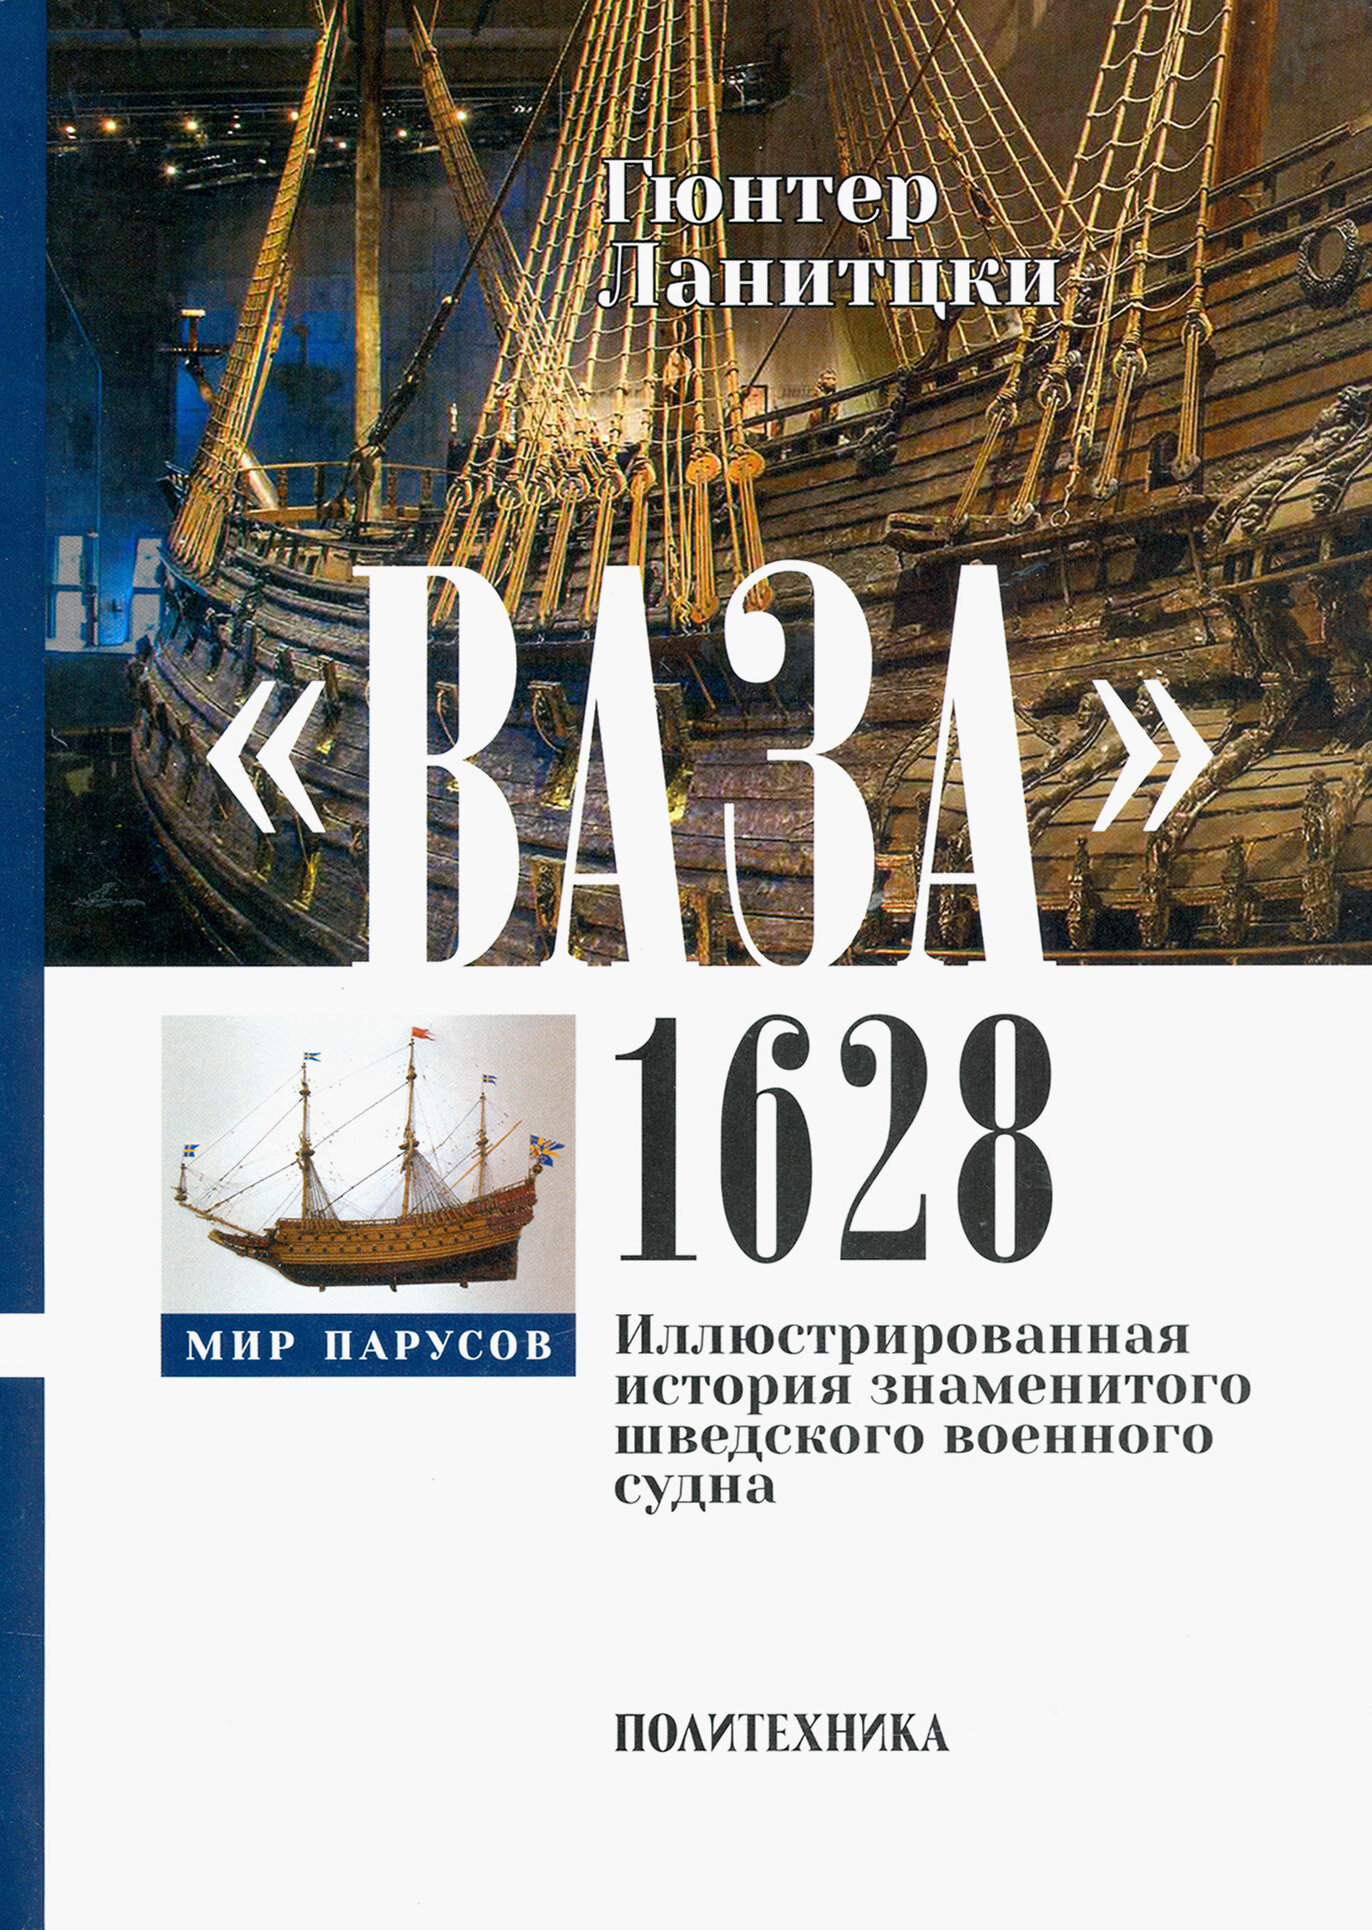 Ваза, 1628. Иллюстрированная история знаменитого шведского военного судна - фото №2